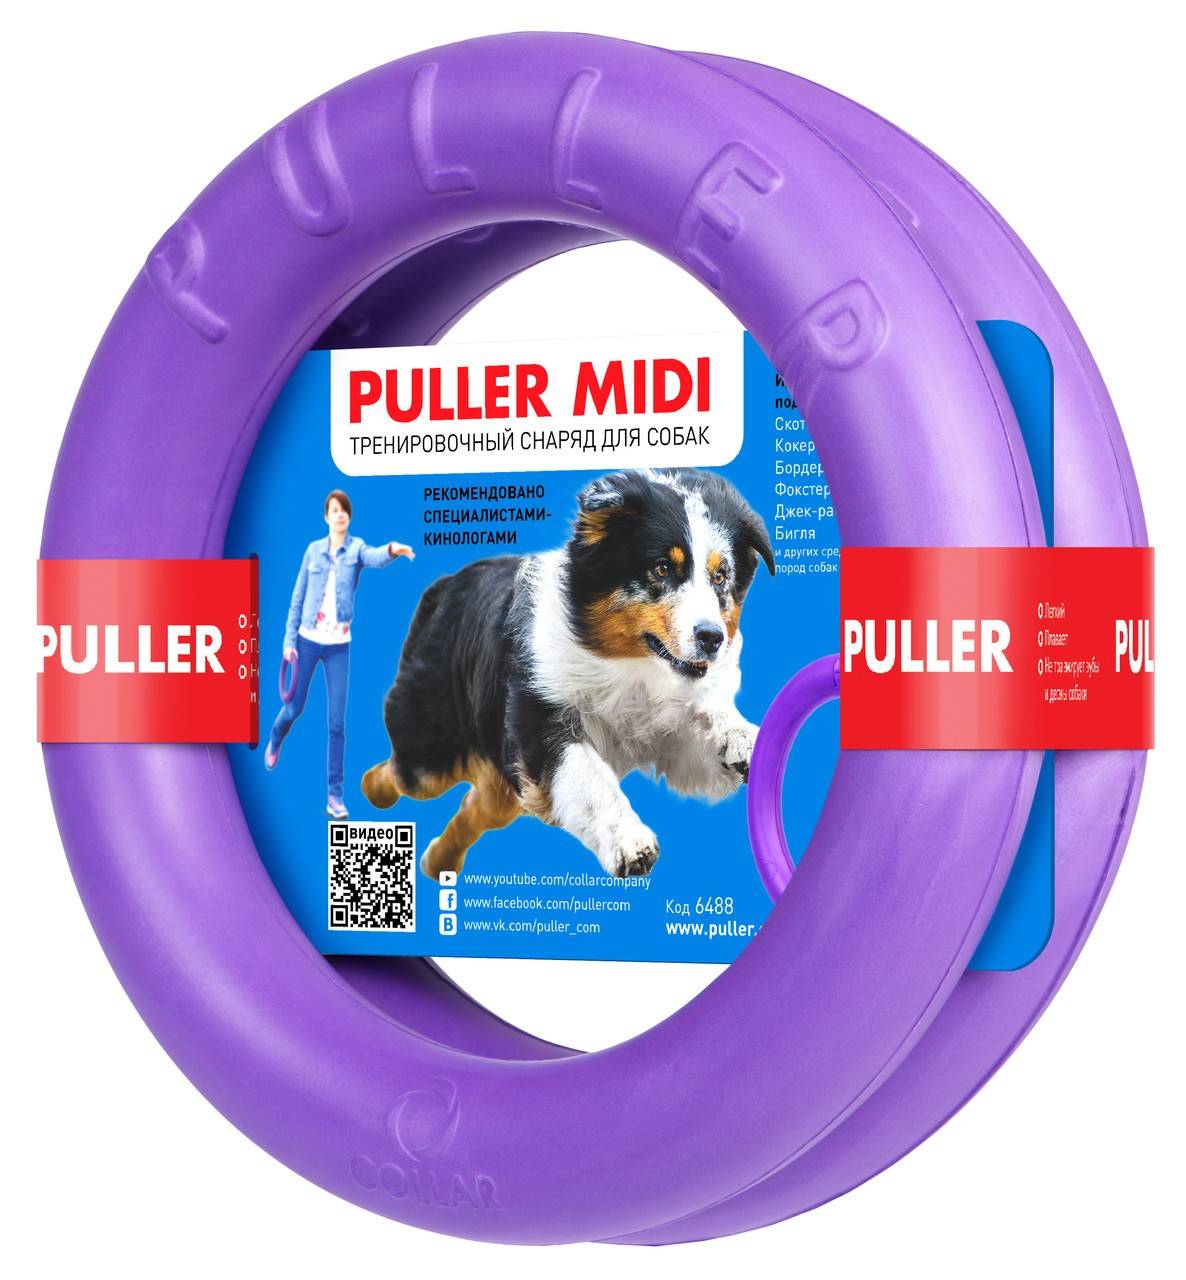 PULLER MIDI – тренувальний снаряд для собак